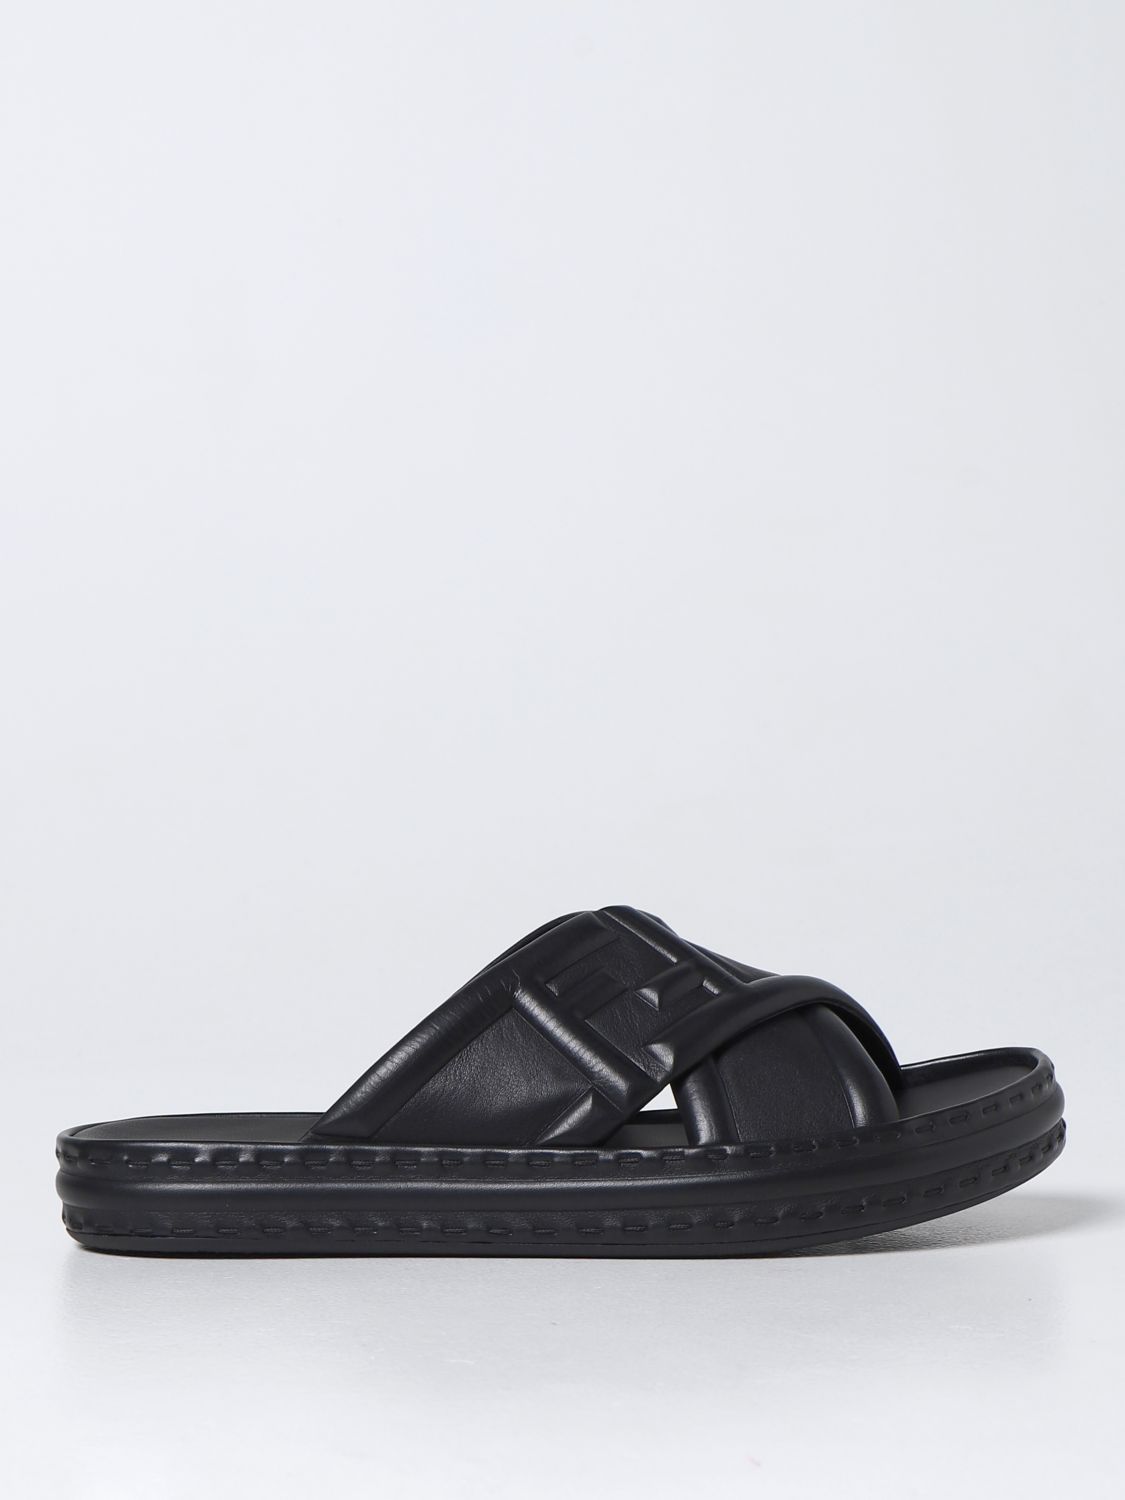 Fendi Men's Black Other Materials Sandals